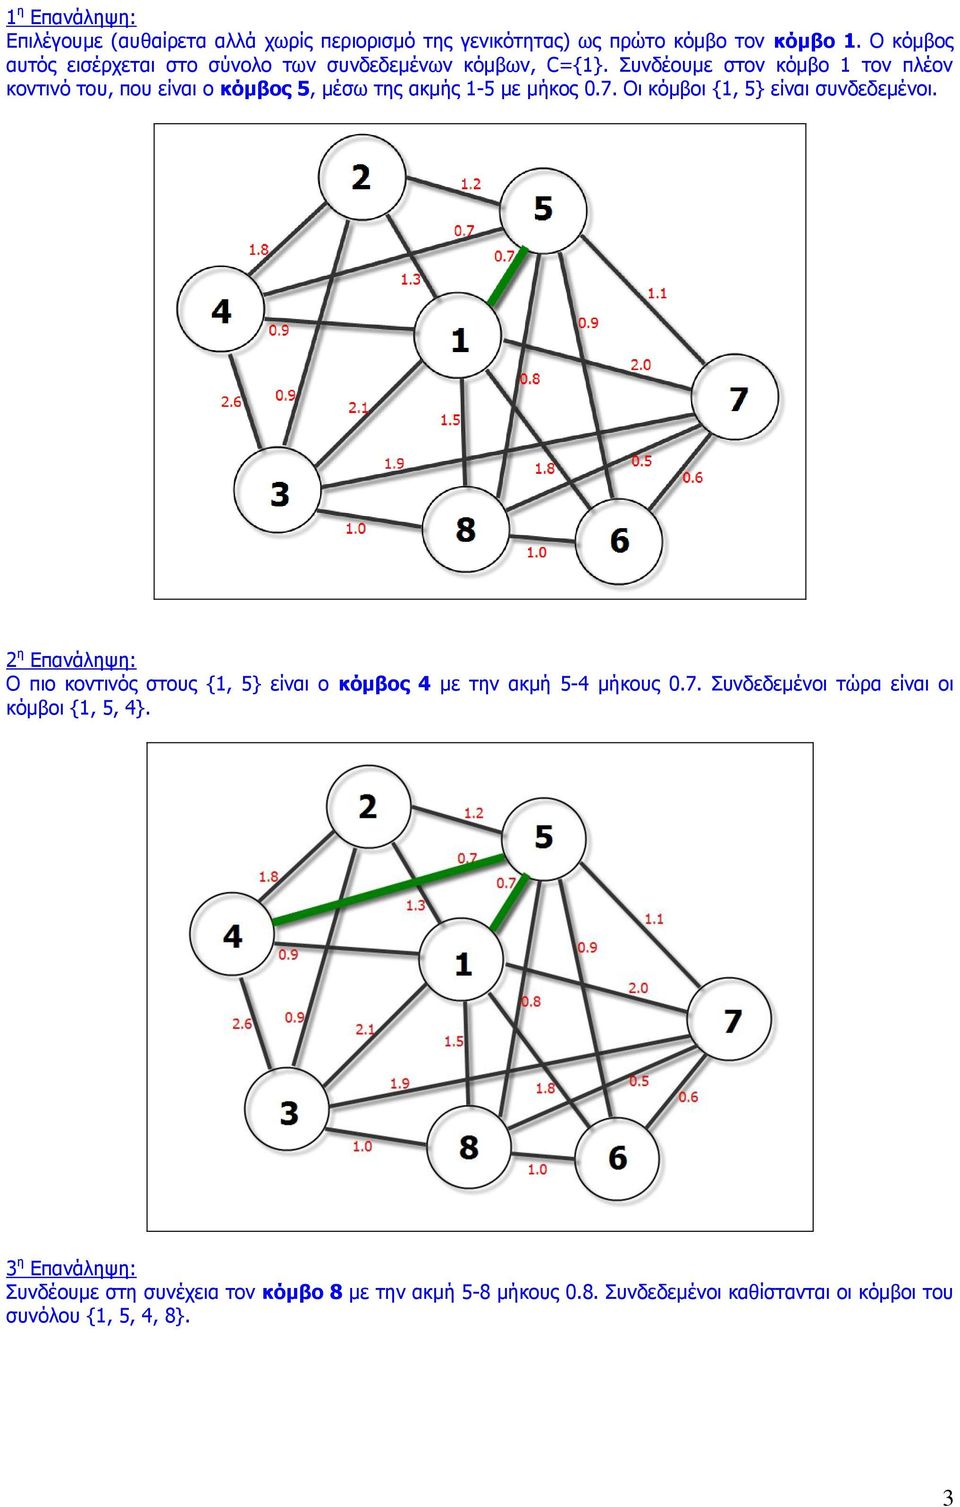 Συνδέουμε στον κόμβο 1 τον πλέον κοντινό του, που είναι ο κόμβος 5, μέσω της ακμής 1-5 με μήκος 0.7. Οι κόμβοι {1, 5} είναι συνδεδεμένοι.